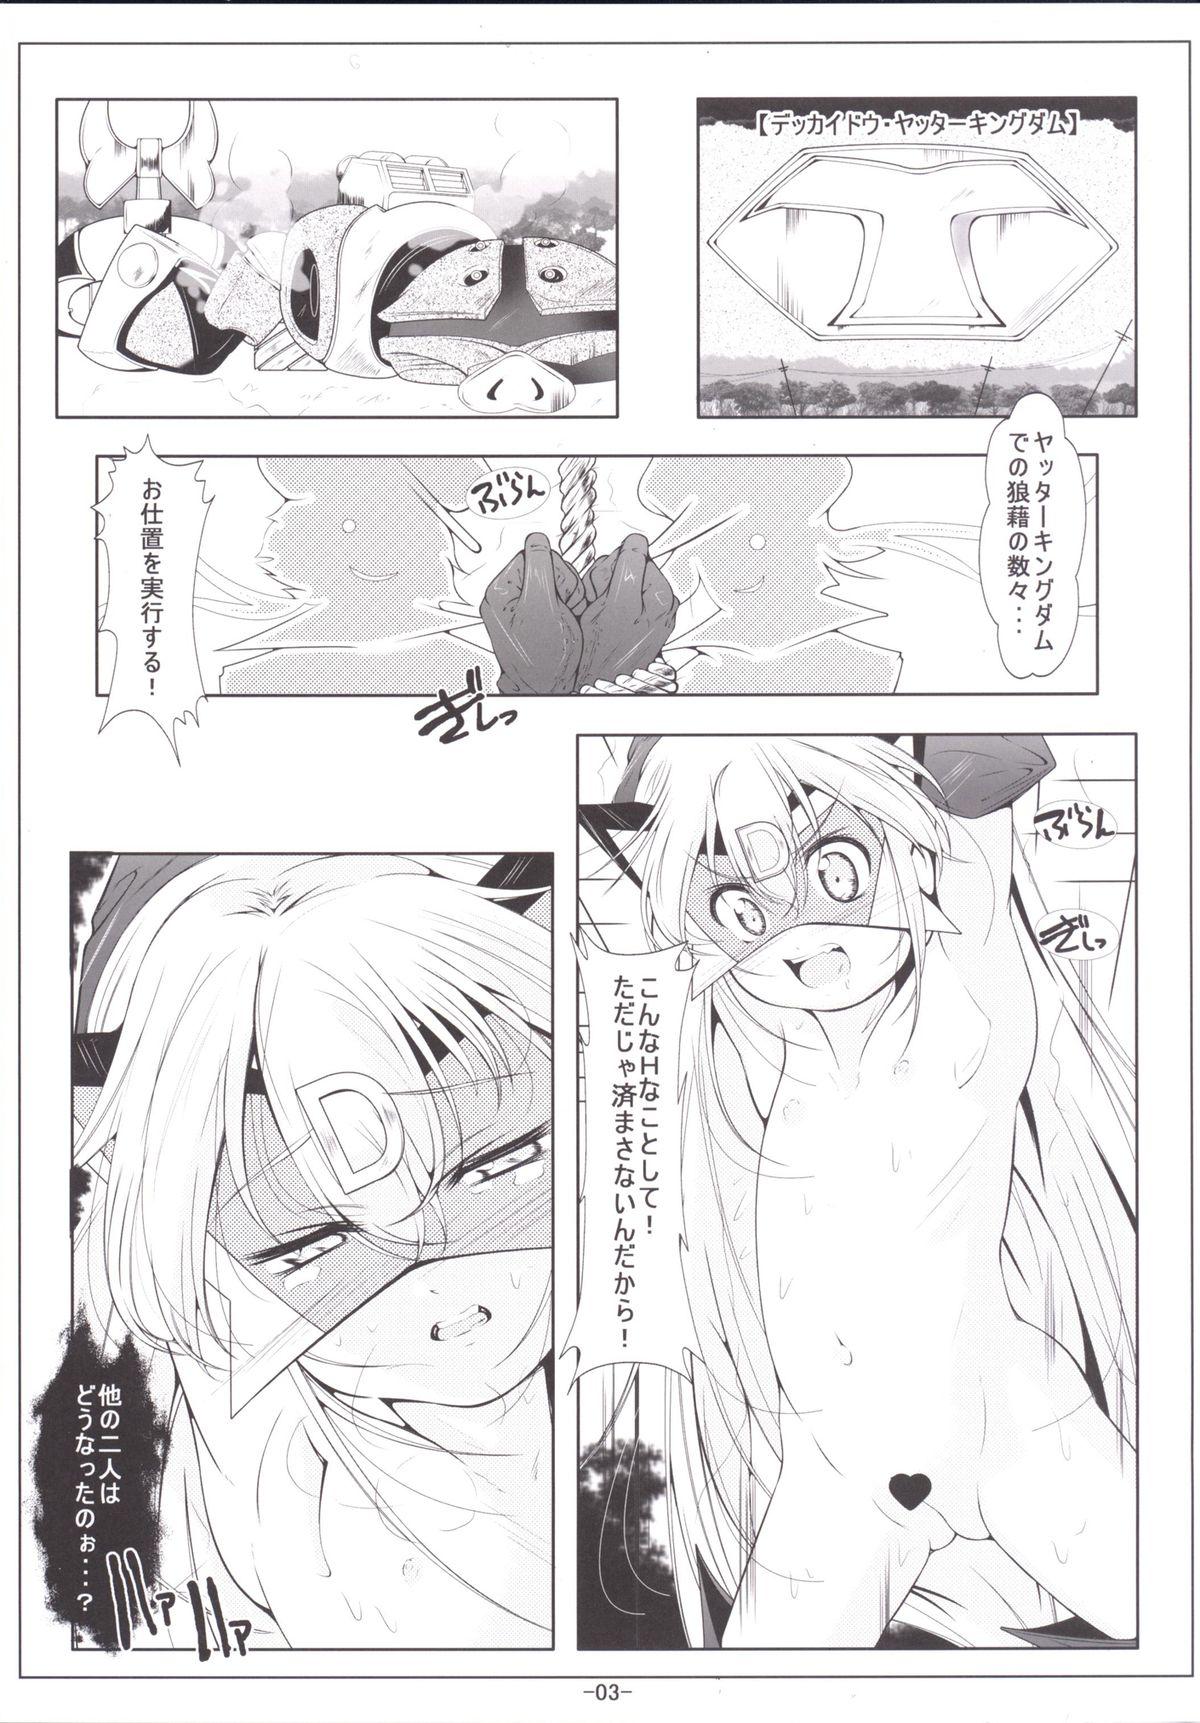 Tribbing Leopard-chan Oshiri no Ana de Yoru no Oshigoto - Yoru no yatterman Parties - Page 4